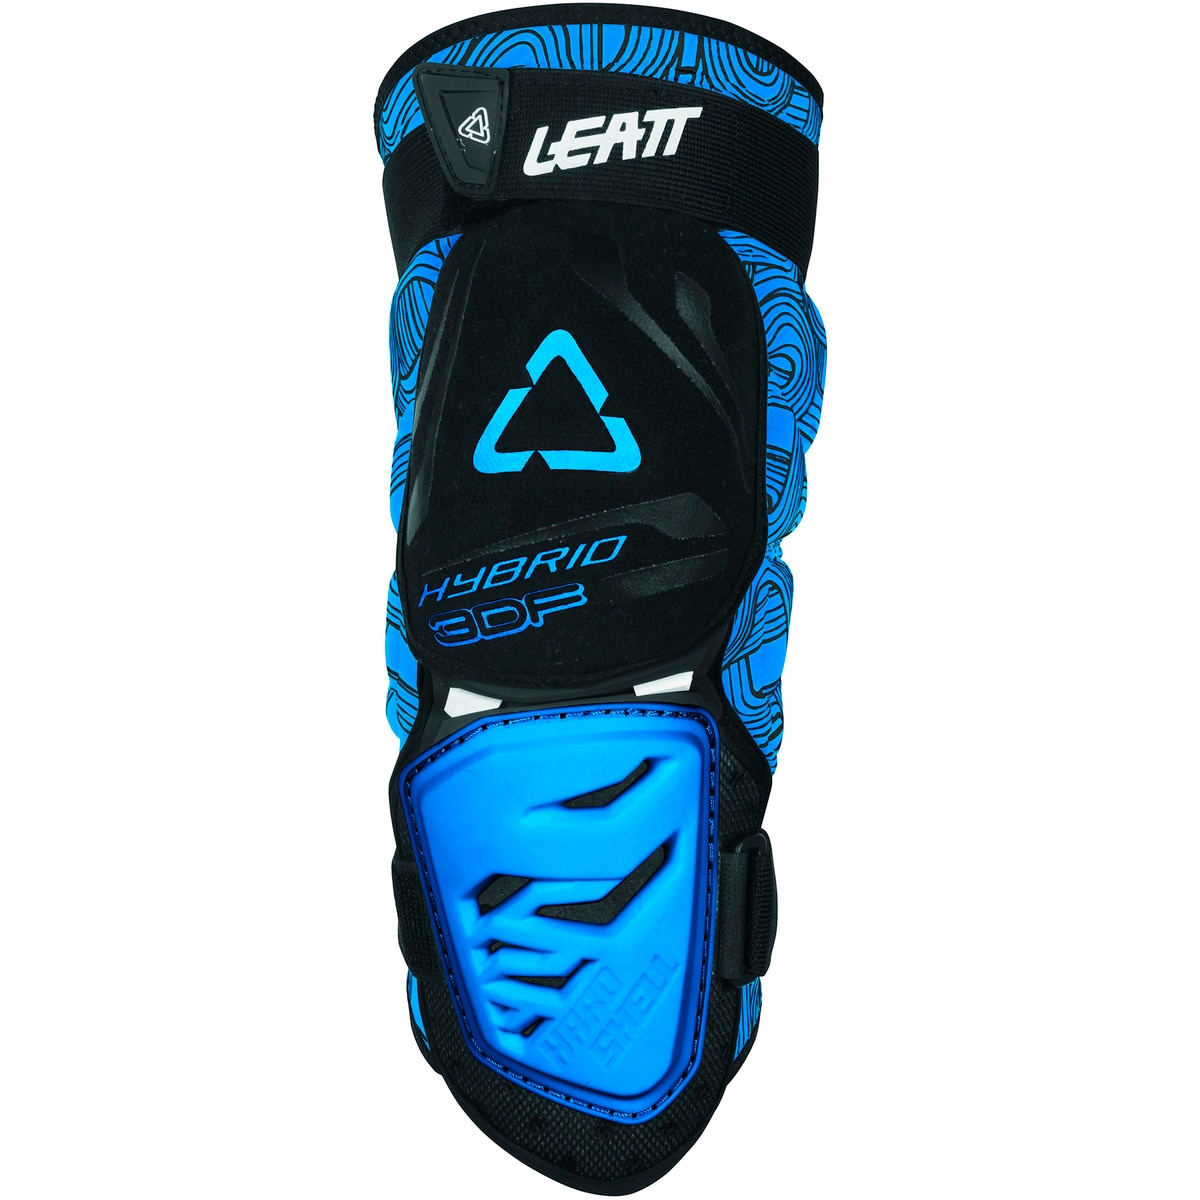 Leatt 3DF Hybrid Enduro Knee Guard